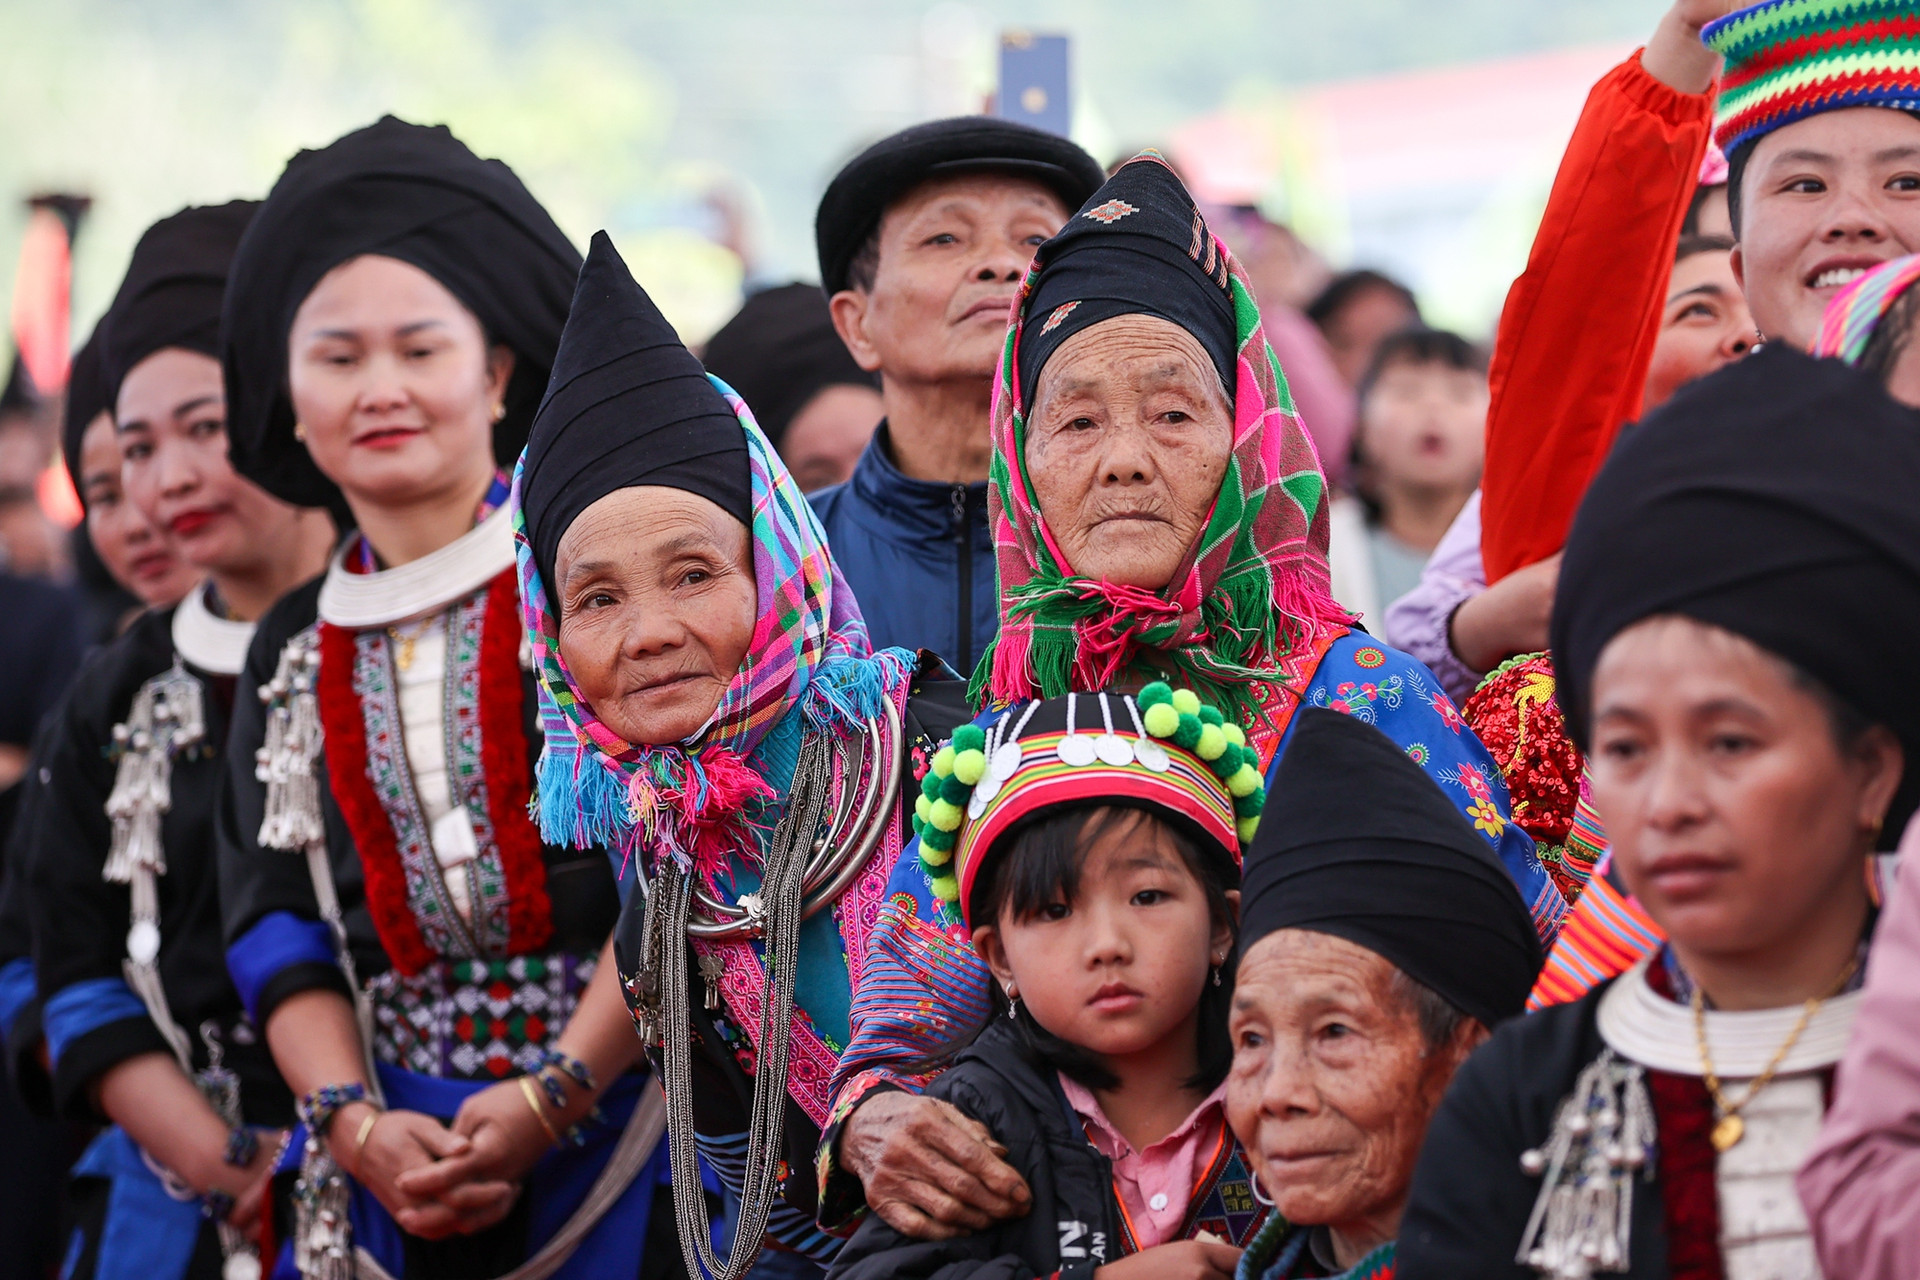 Thủ tướng chung vui Ngày hội đại đoàn kết cùng đồng bào các dân tộc tỉnh Lai Châu- Ảnh 6.